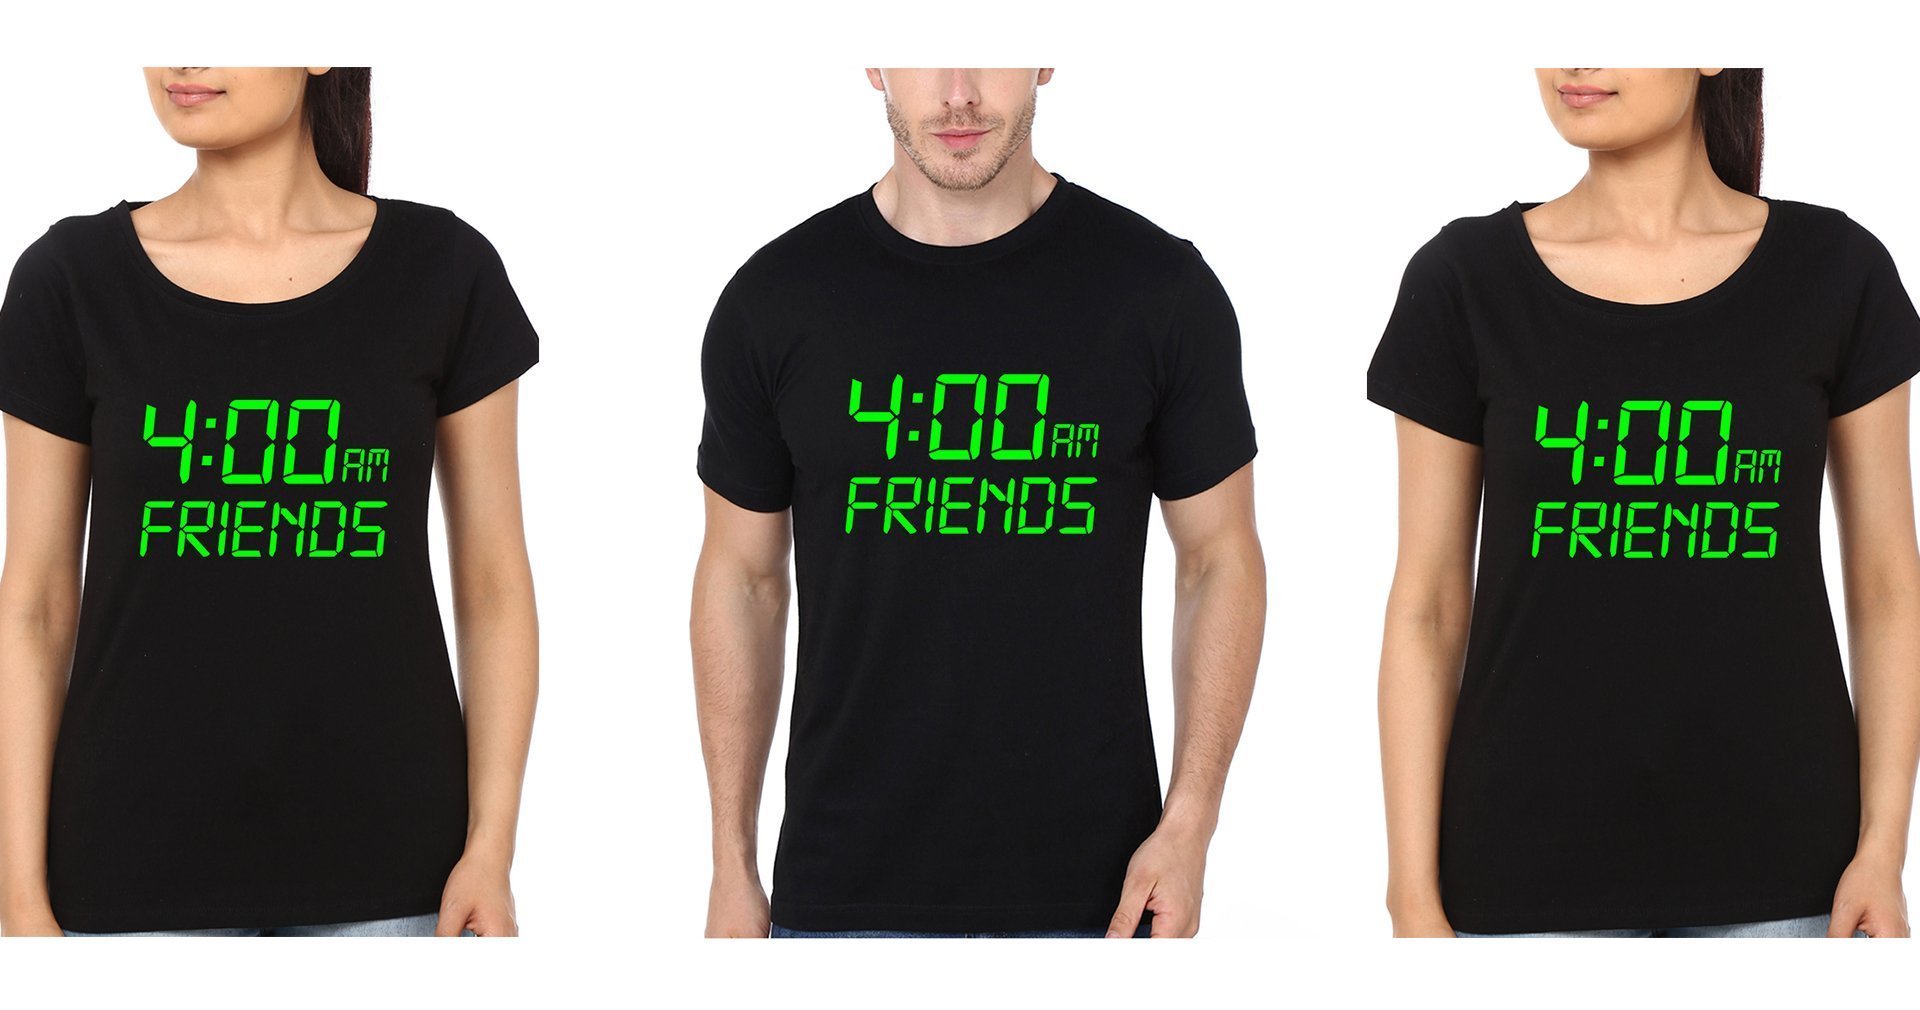 4Am Friends BFF Half Sleeves T-Shirts-FunkyTees - Funky Tees Club